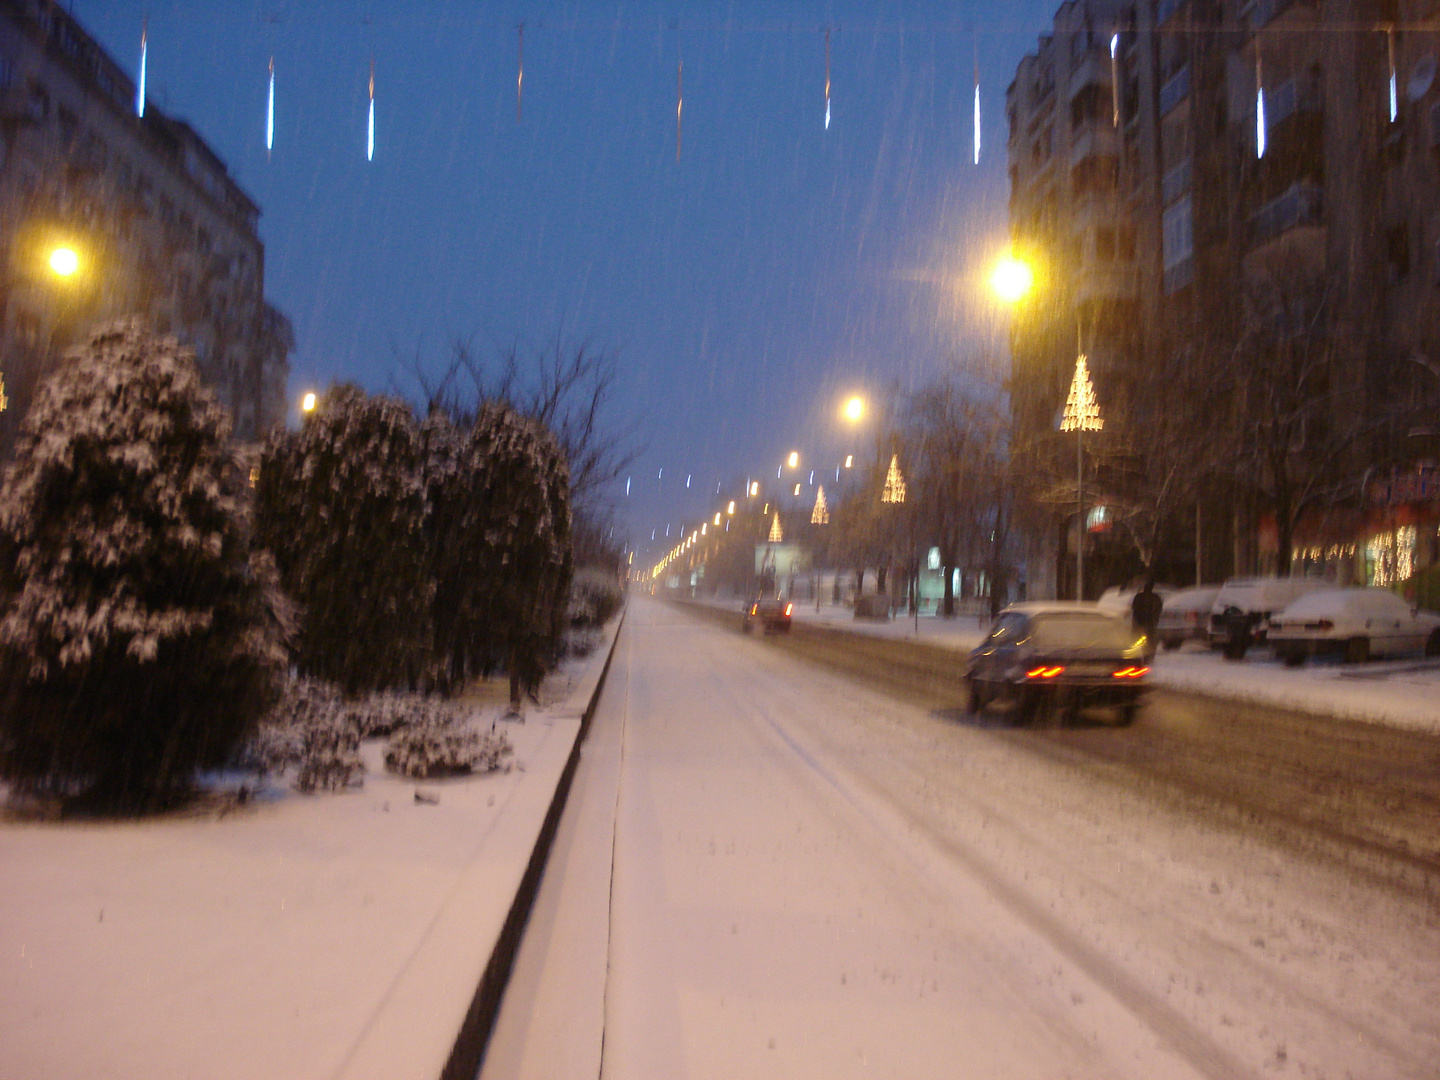 empty snowy street